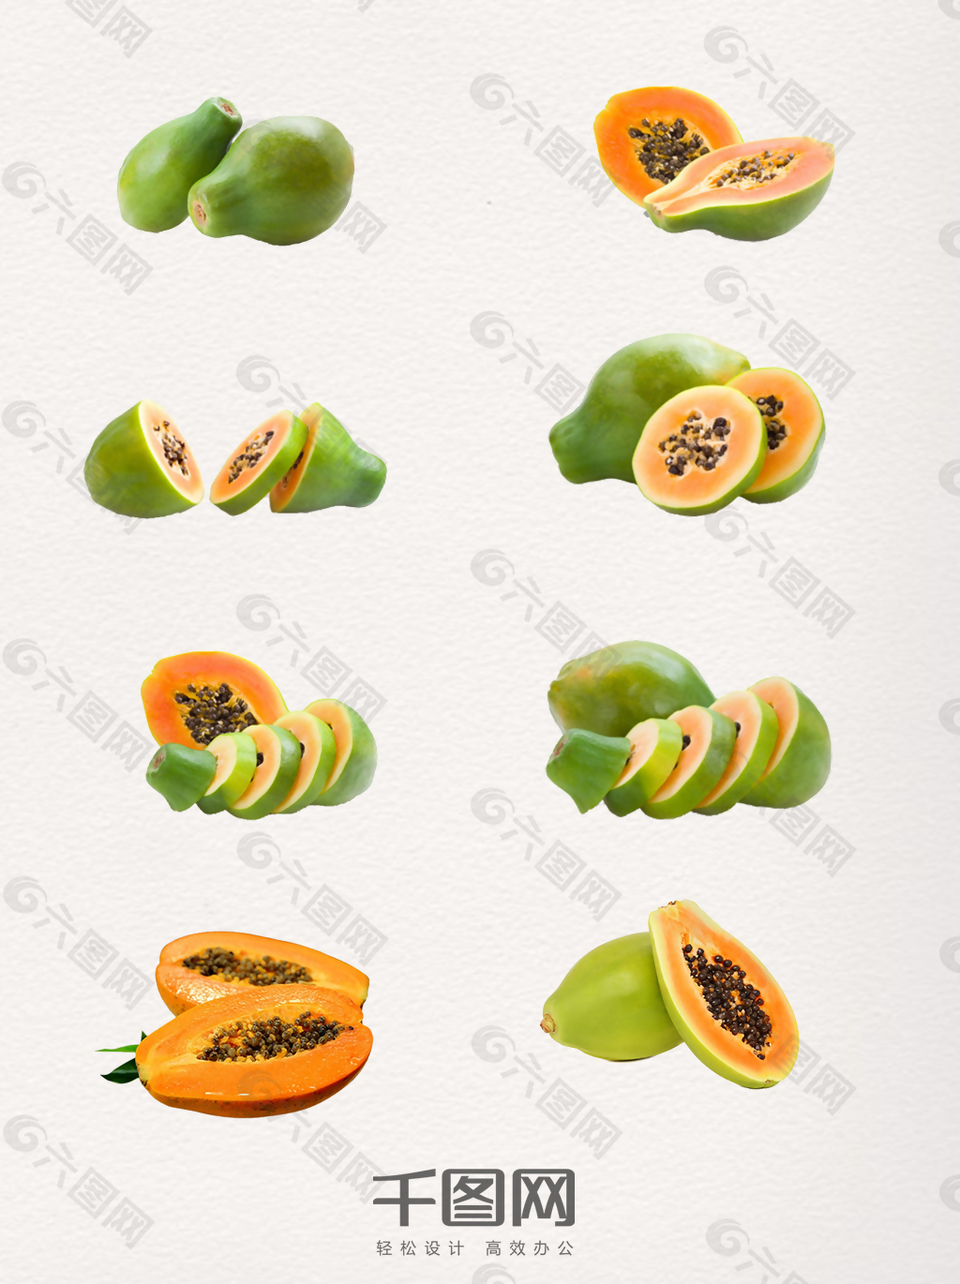 一组造型多样的木瓜图